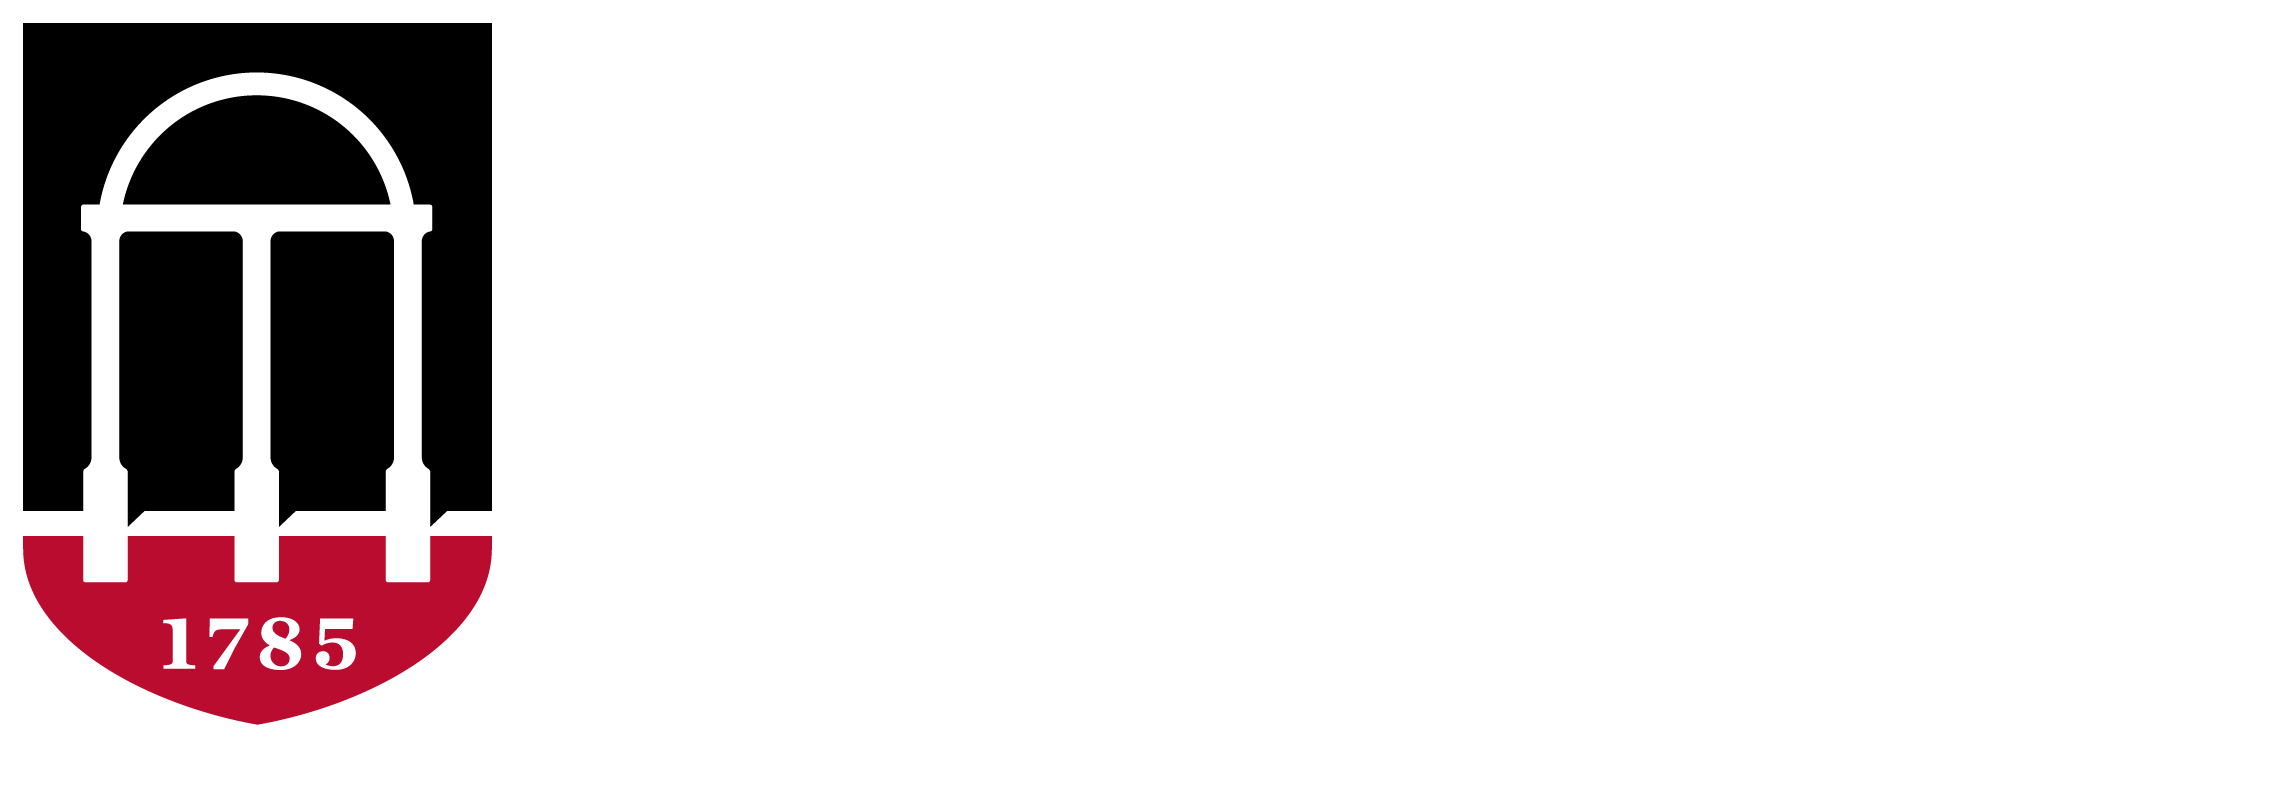 President's Office Logo